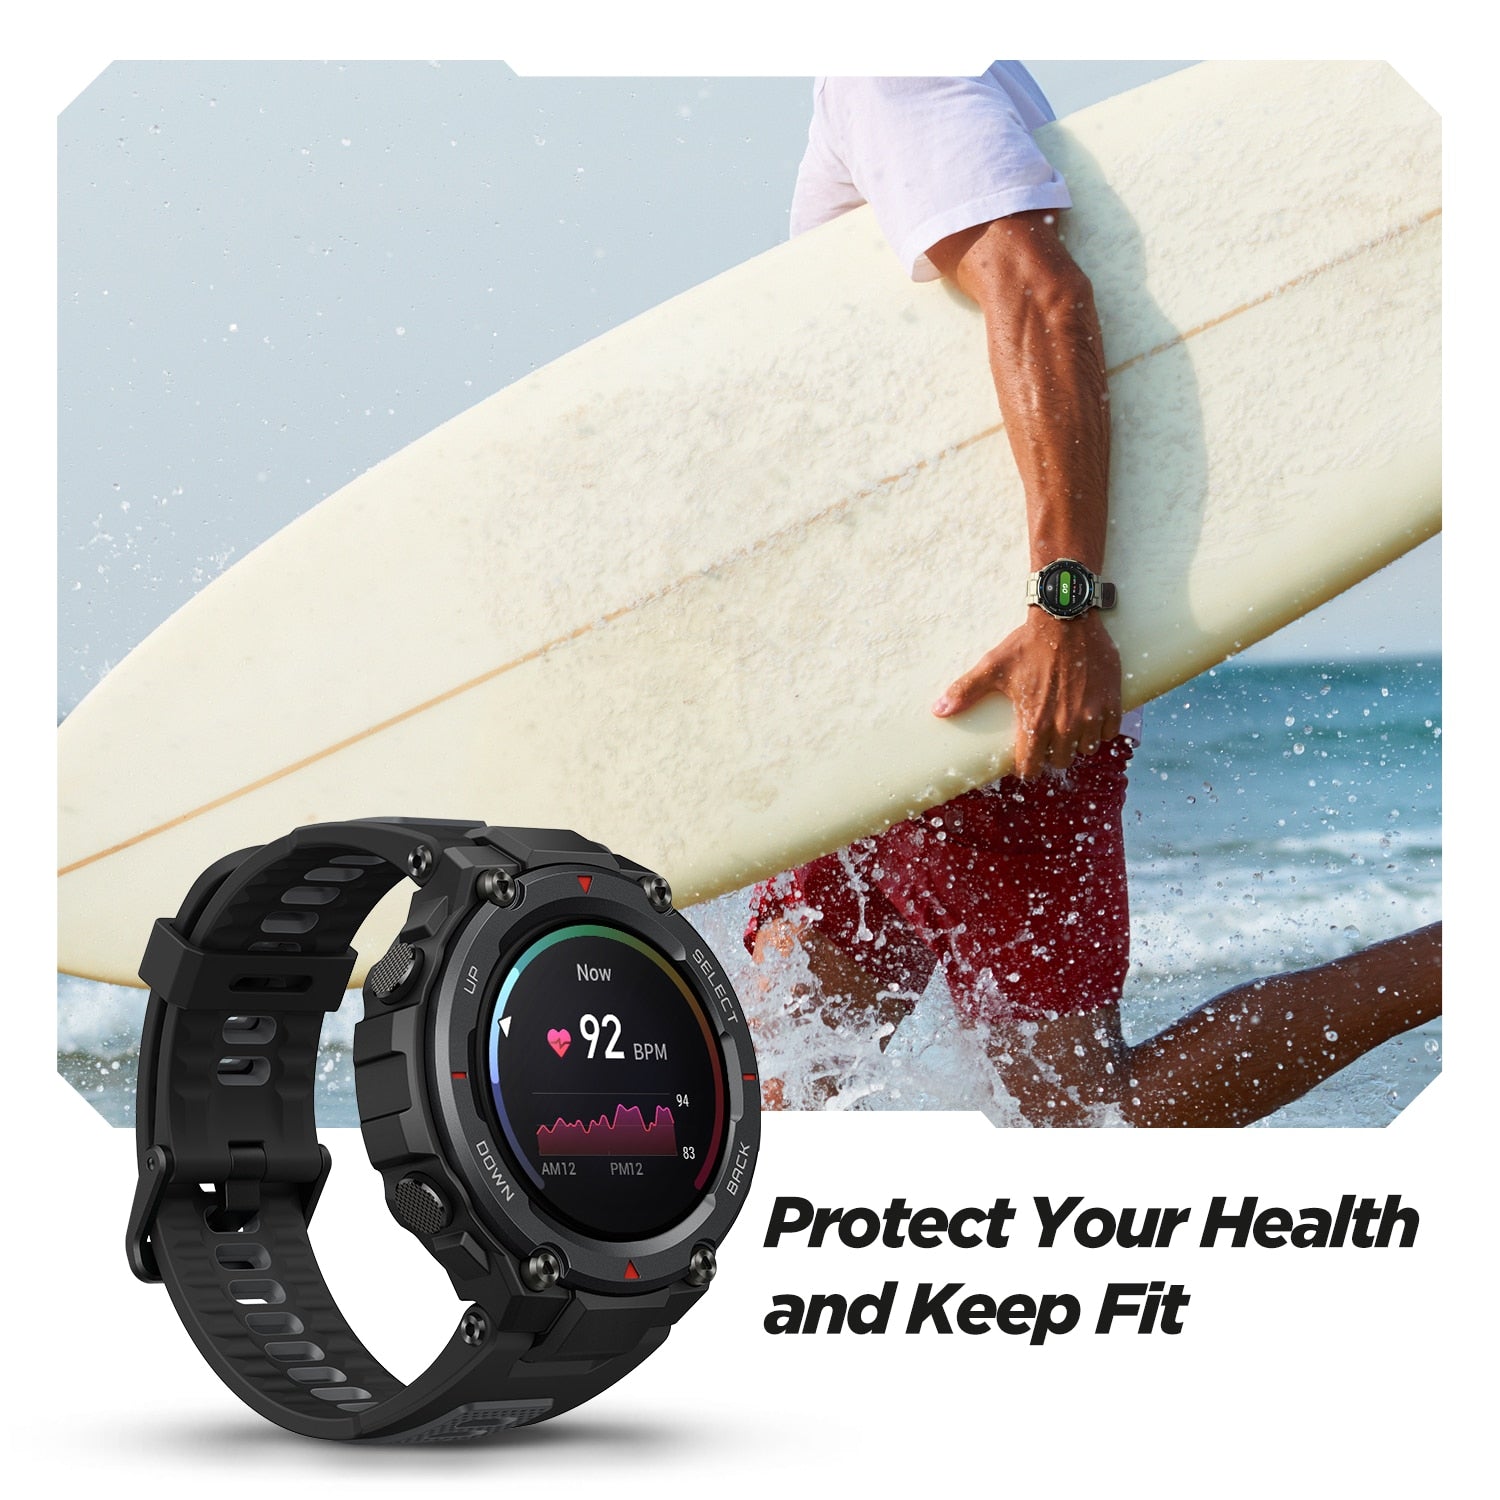 Amazfit T-Rex Pro GPS Outdoor Smartwatch - Westies Watches